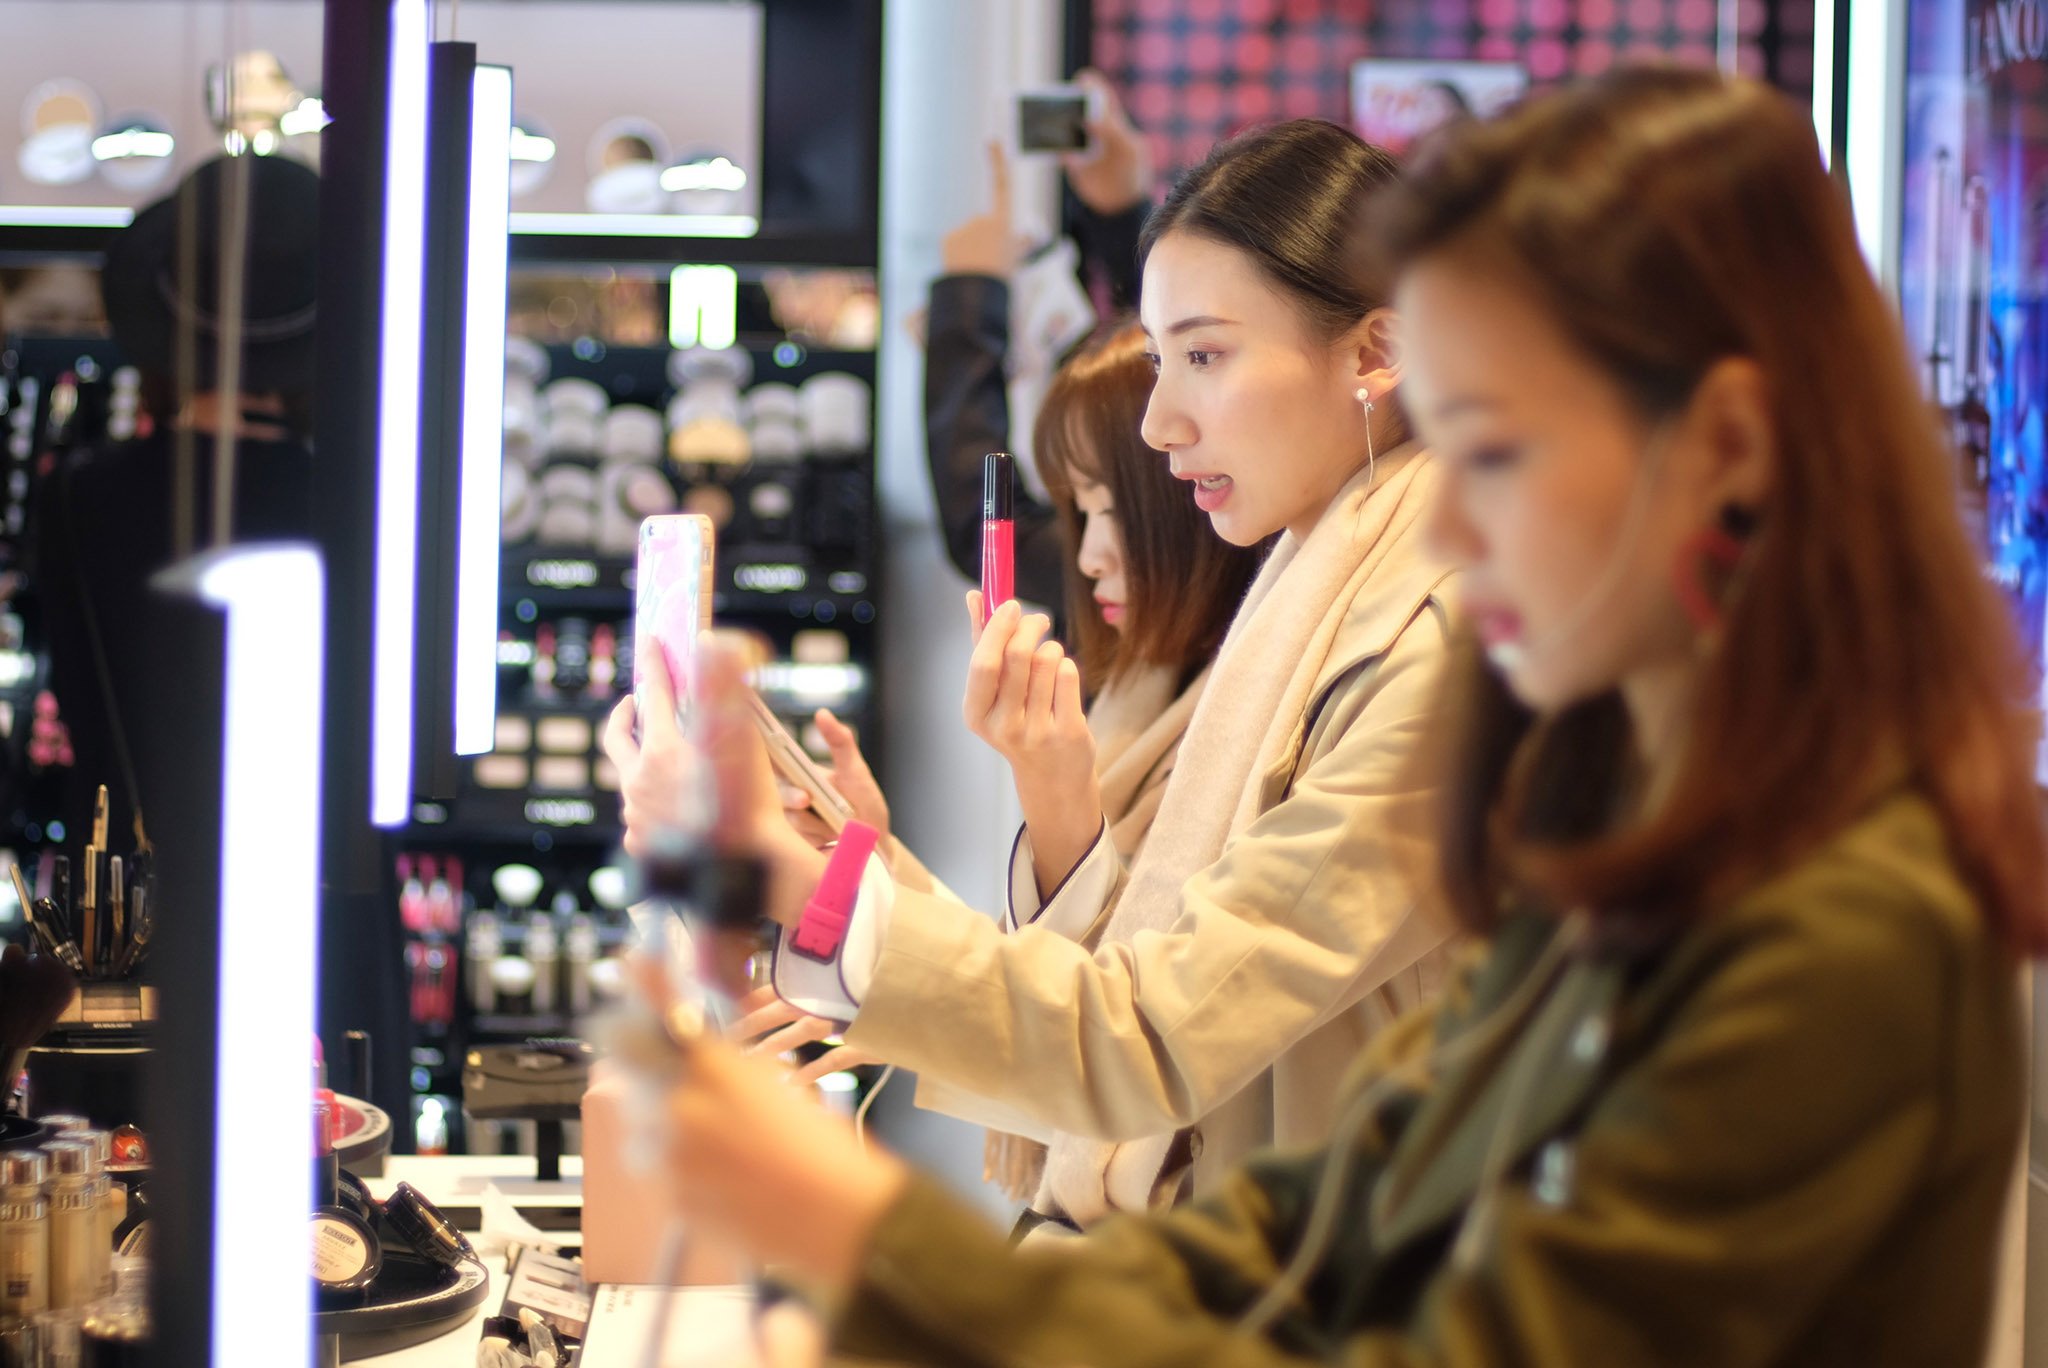 KOL Trung Quốc đang chi phối cách giới trẻ mua sắm online